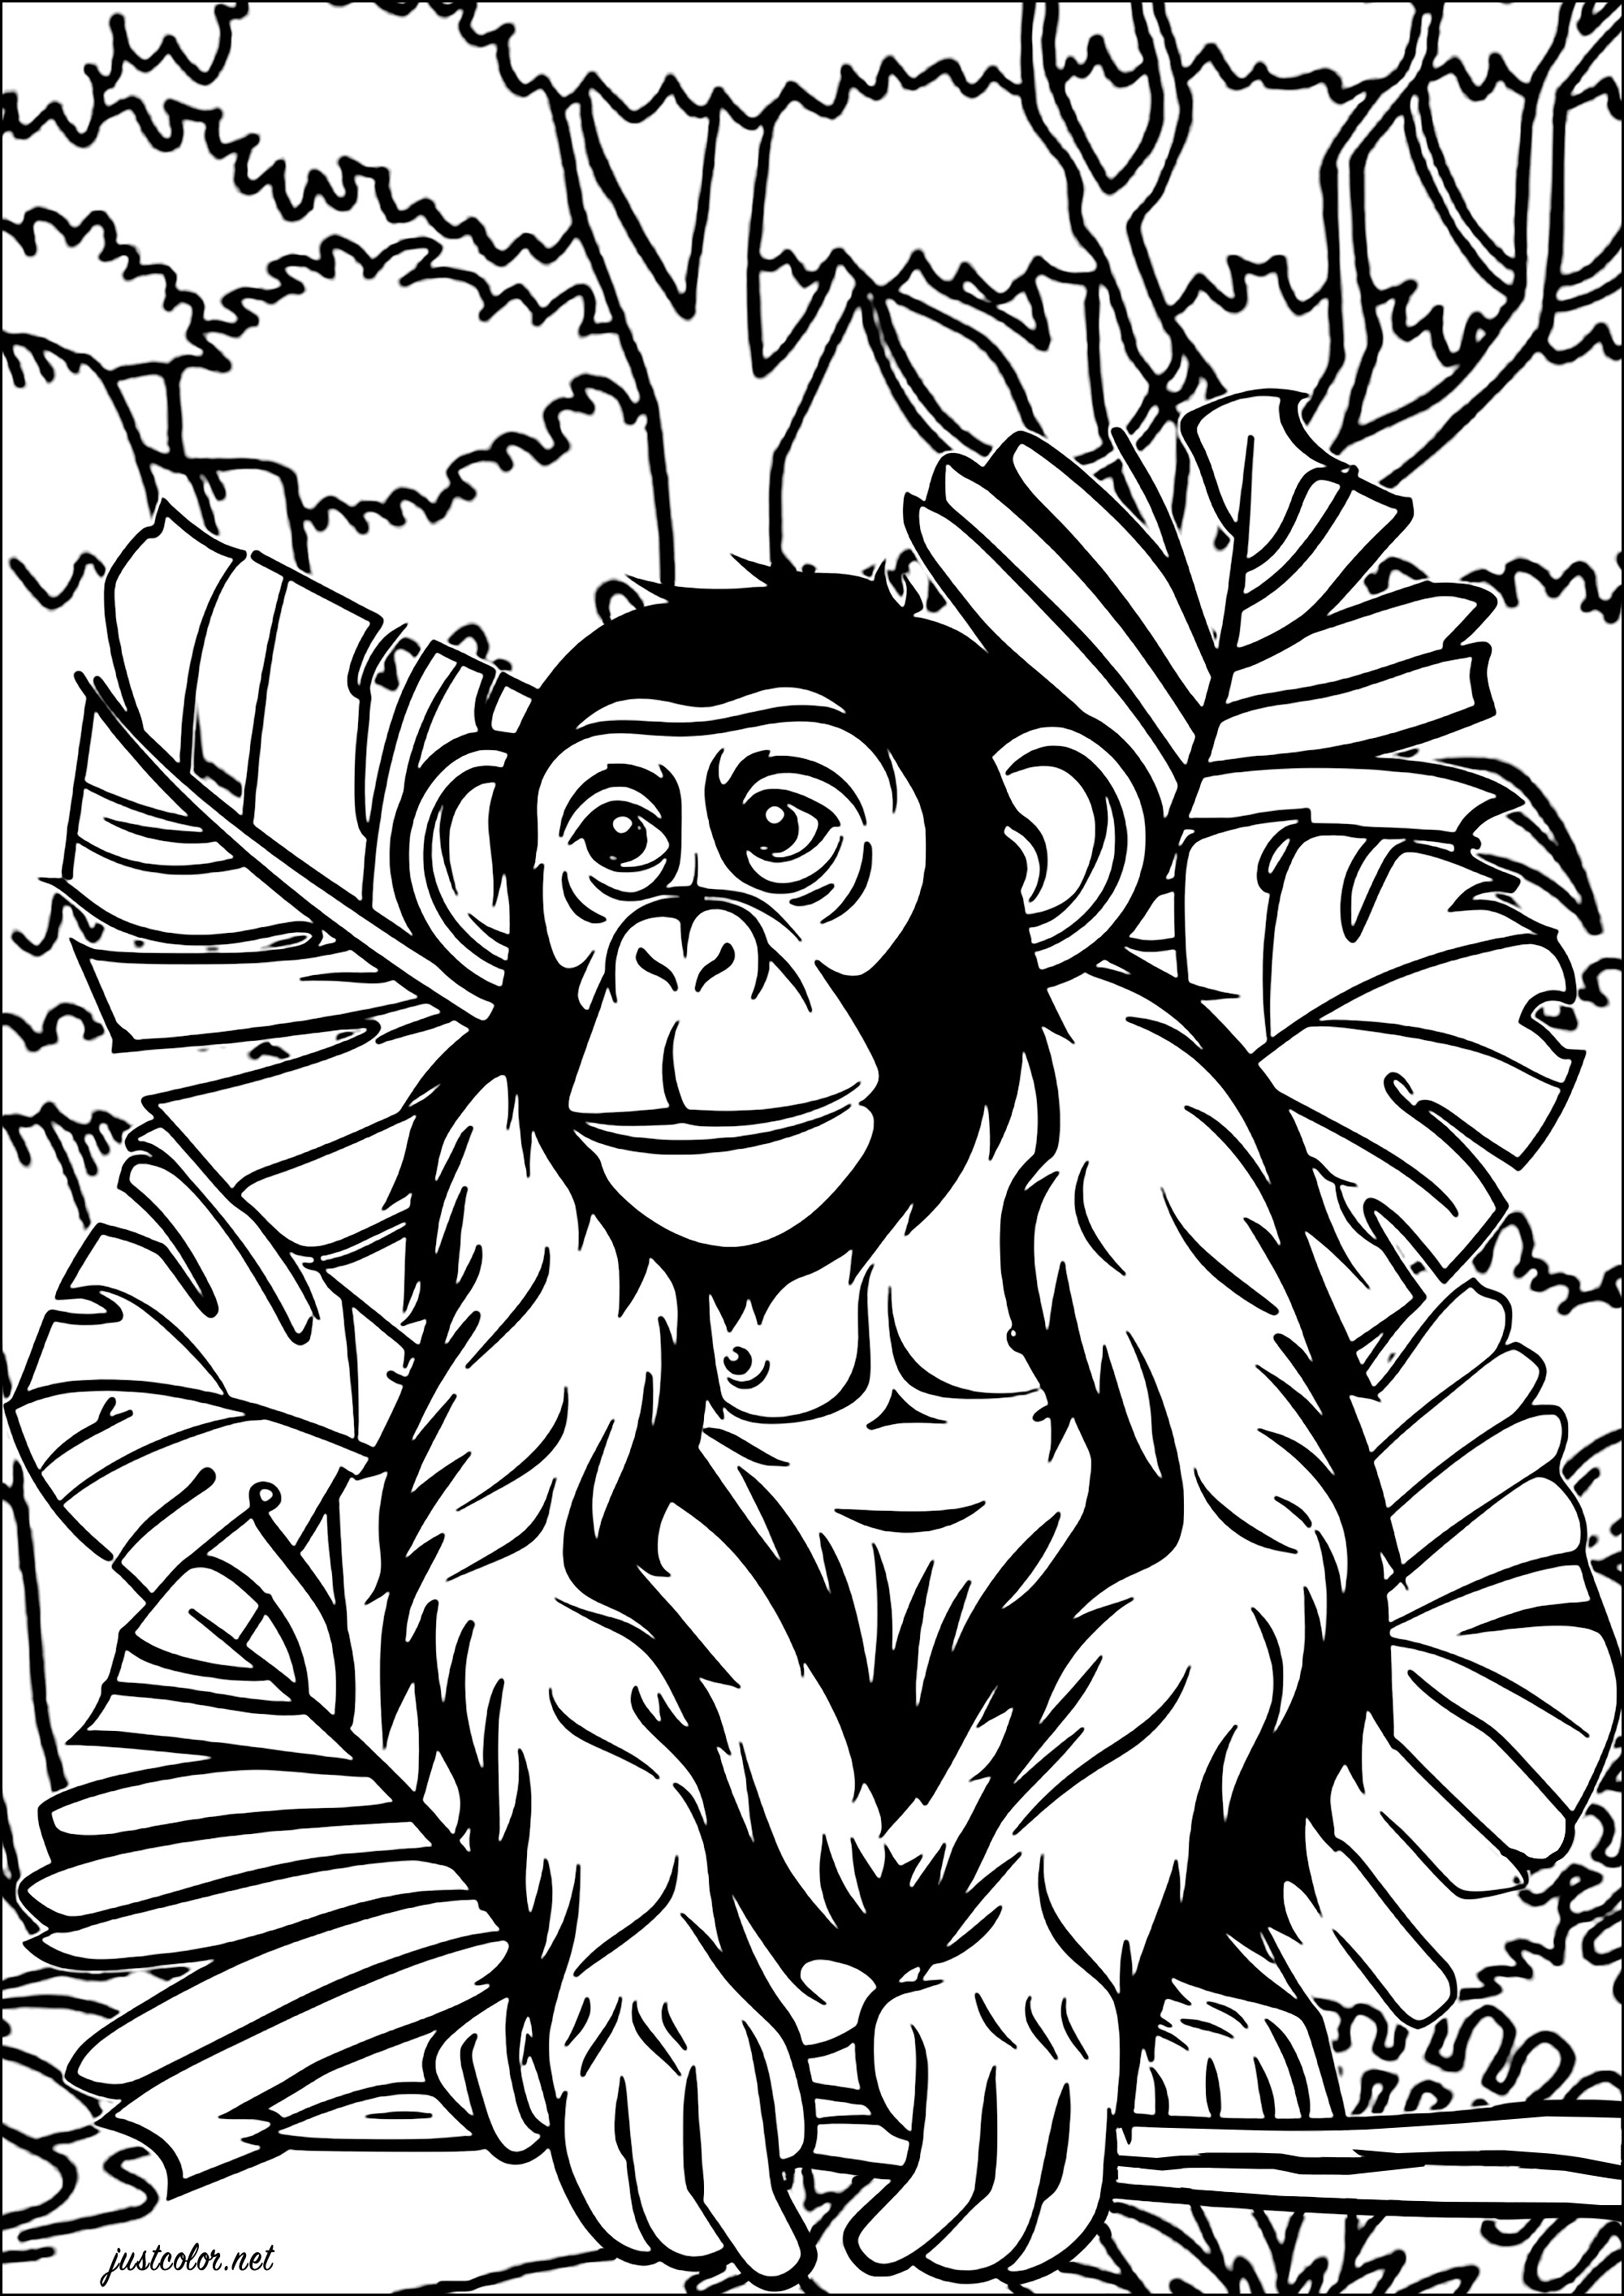 Chimpanzé na selva. Um desenho muito realista de um chimpanzé para colorir, com grandes folhas e árvores gigantes no fundo.